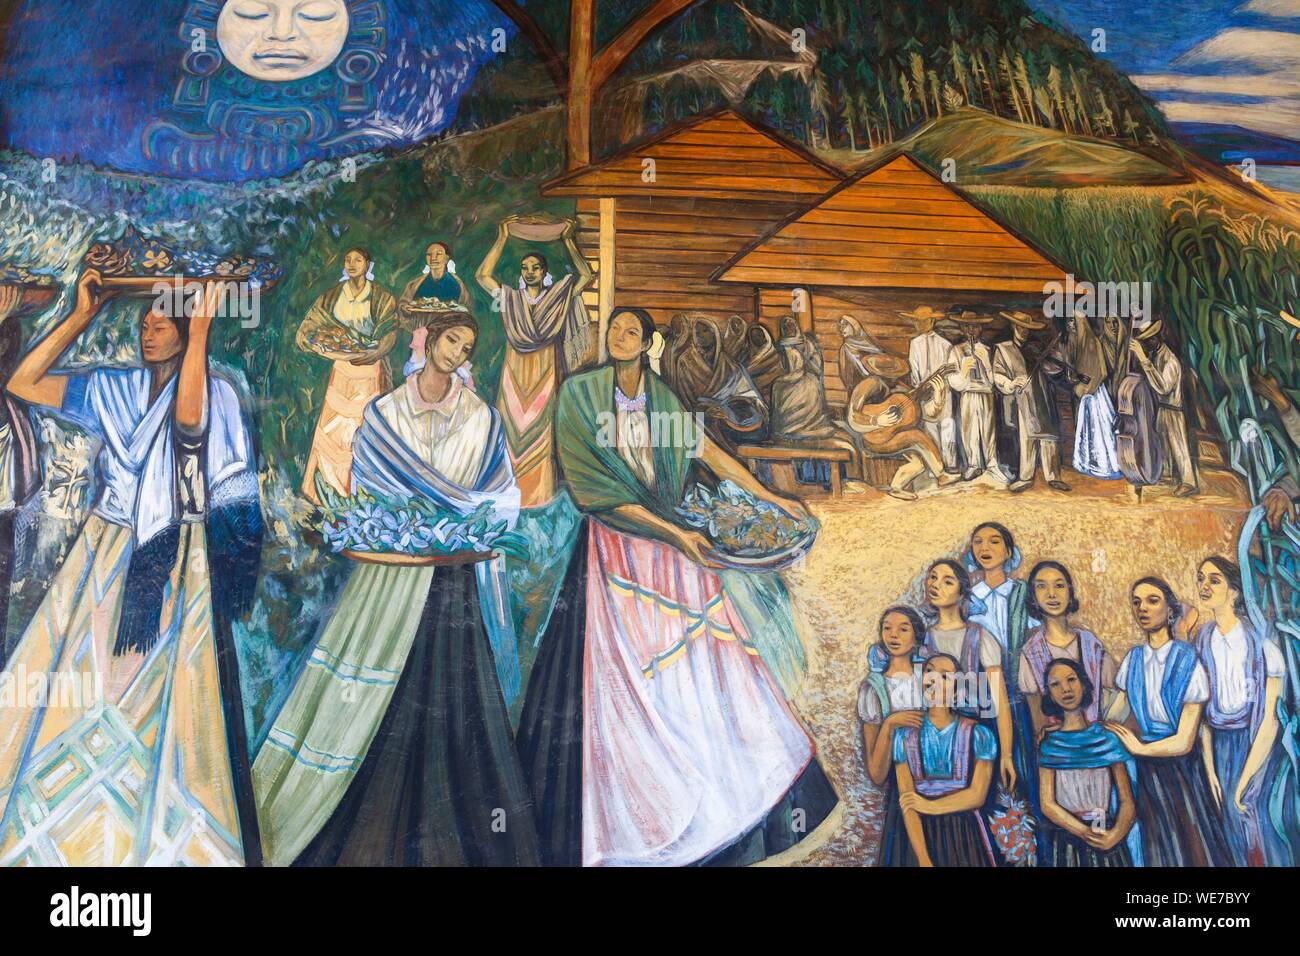 México, Estado de Michoacán, Morelia, centro histórico de Morelia listados como Patrimonio Mundial por la UNESCO, el Palacio de Gobierno, la pintura mural artista Alfredo Zalce Foto de stock